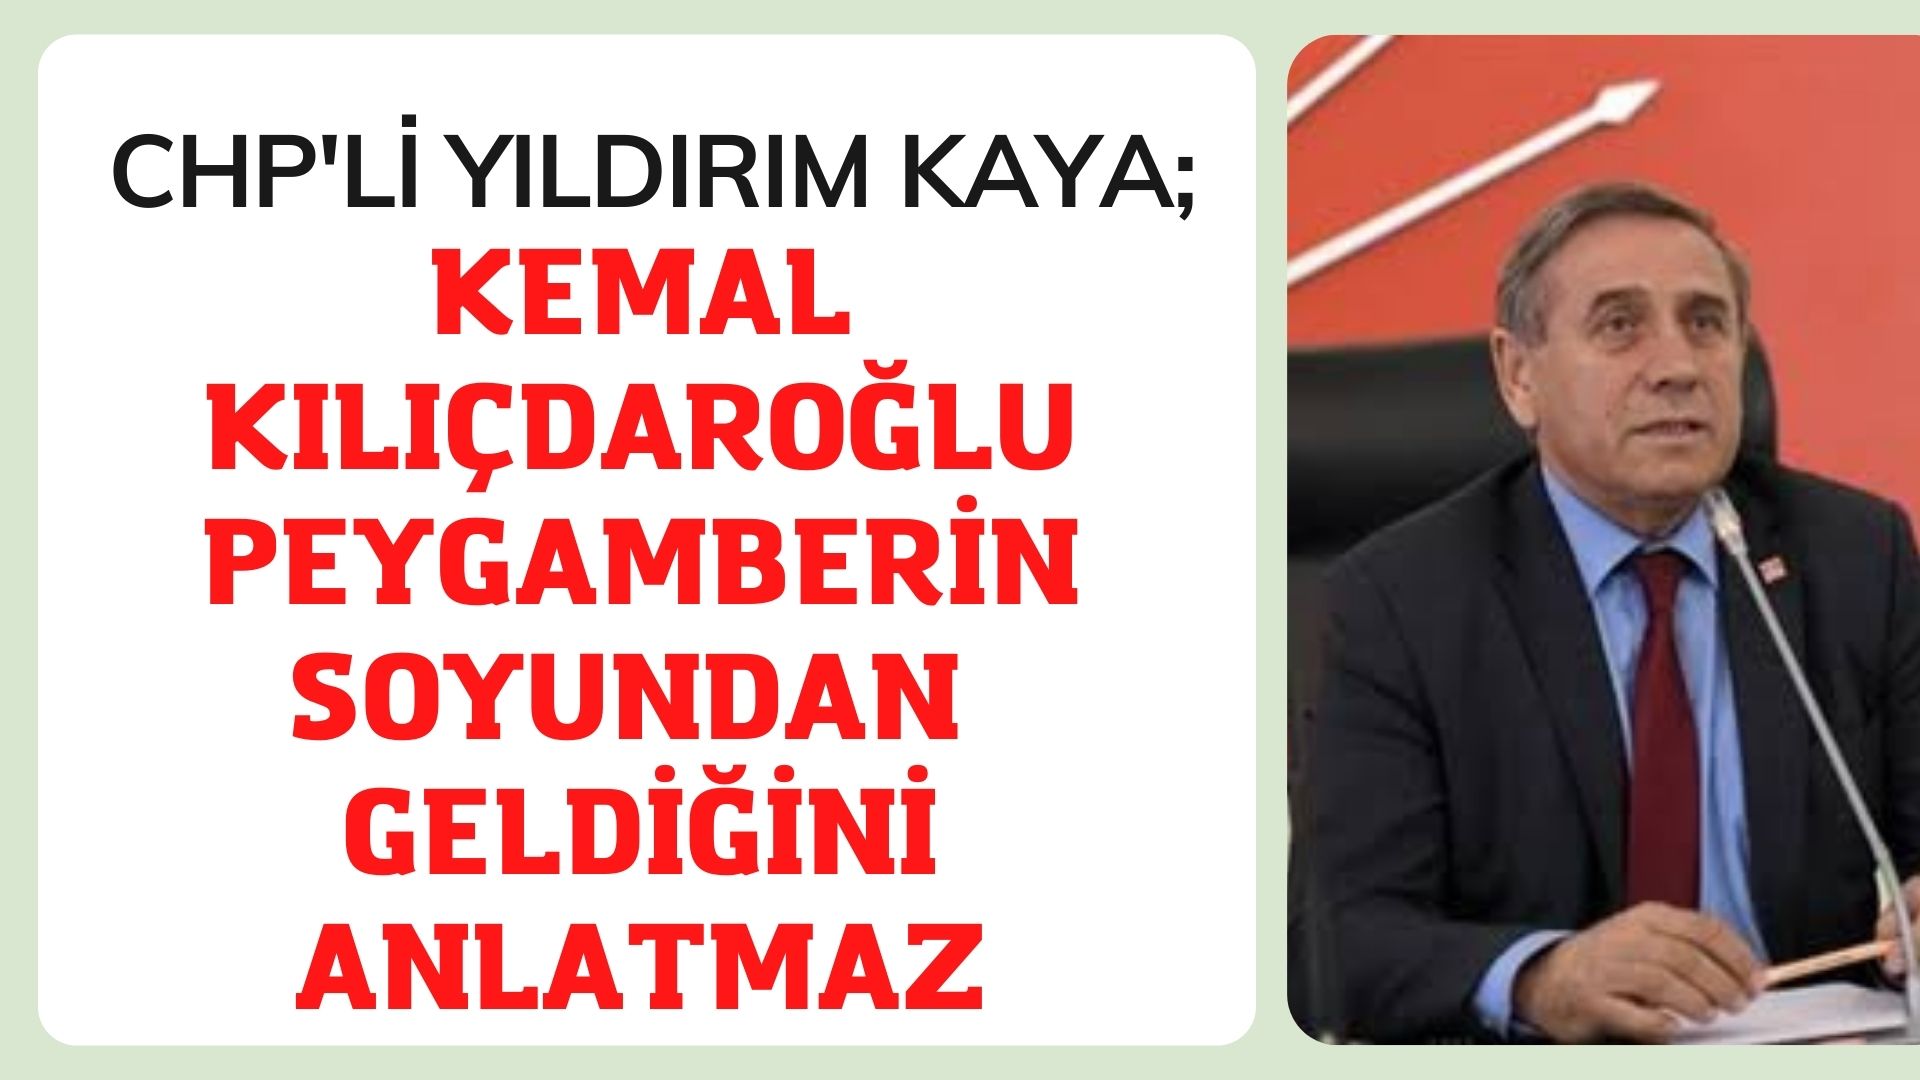 Kaya: Kemal Kılıçdaroğlu Peygamberin soyundan geldiğini anlatmaz